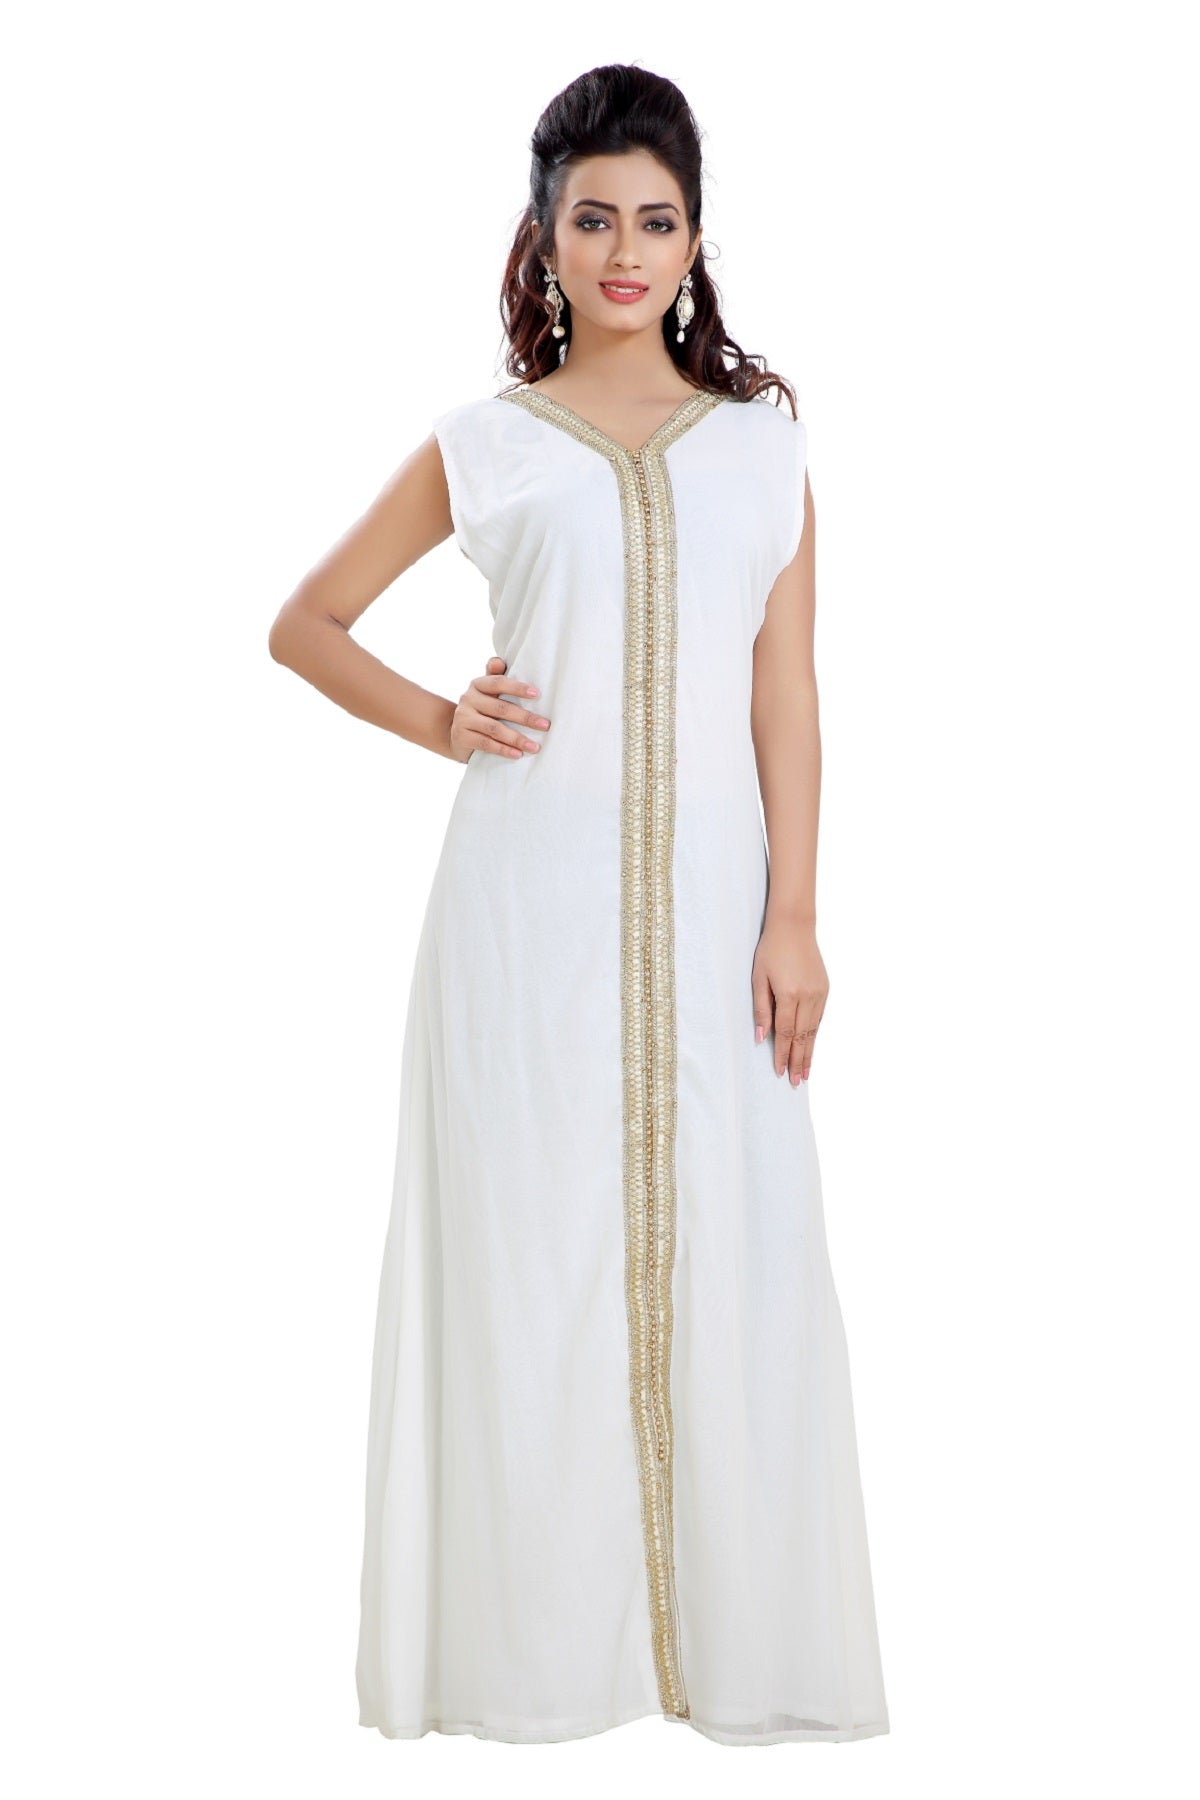 Buy White Chikankari Kurti, Lucknowi White Viscose Chikan Kurta, Kurta  Ethnic Wear, Hand-embroidered Kurta Gift for Her, With Free White Inner  Online in India - Etsy